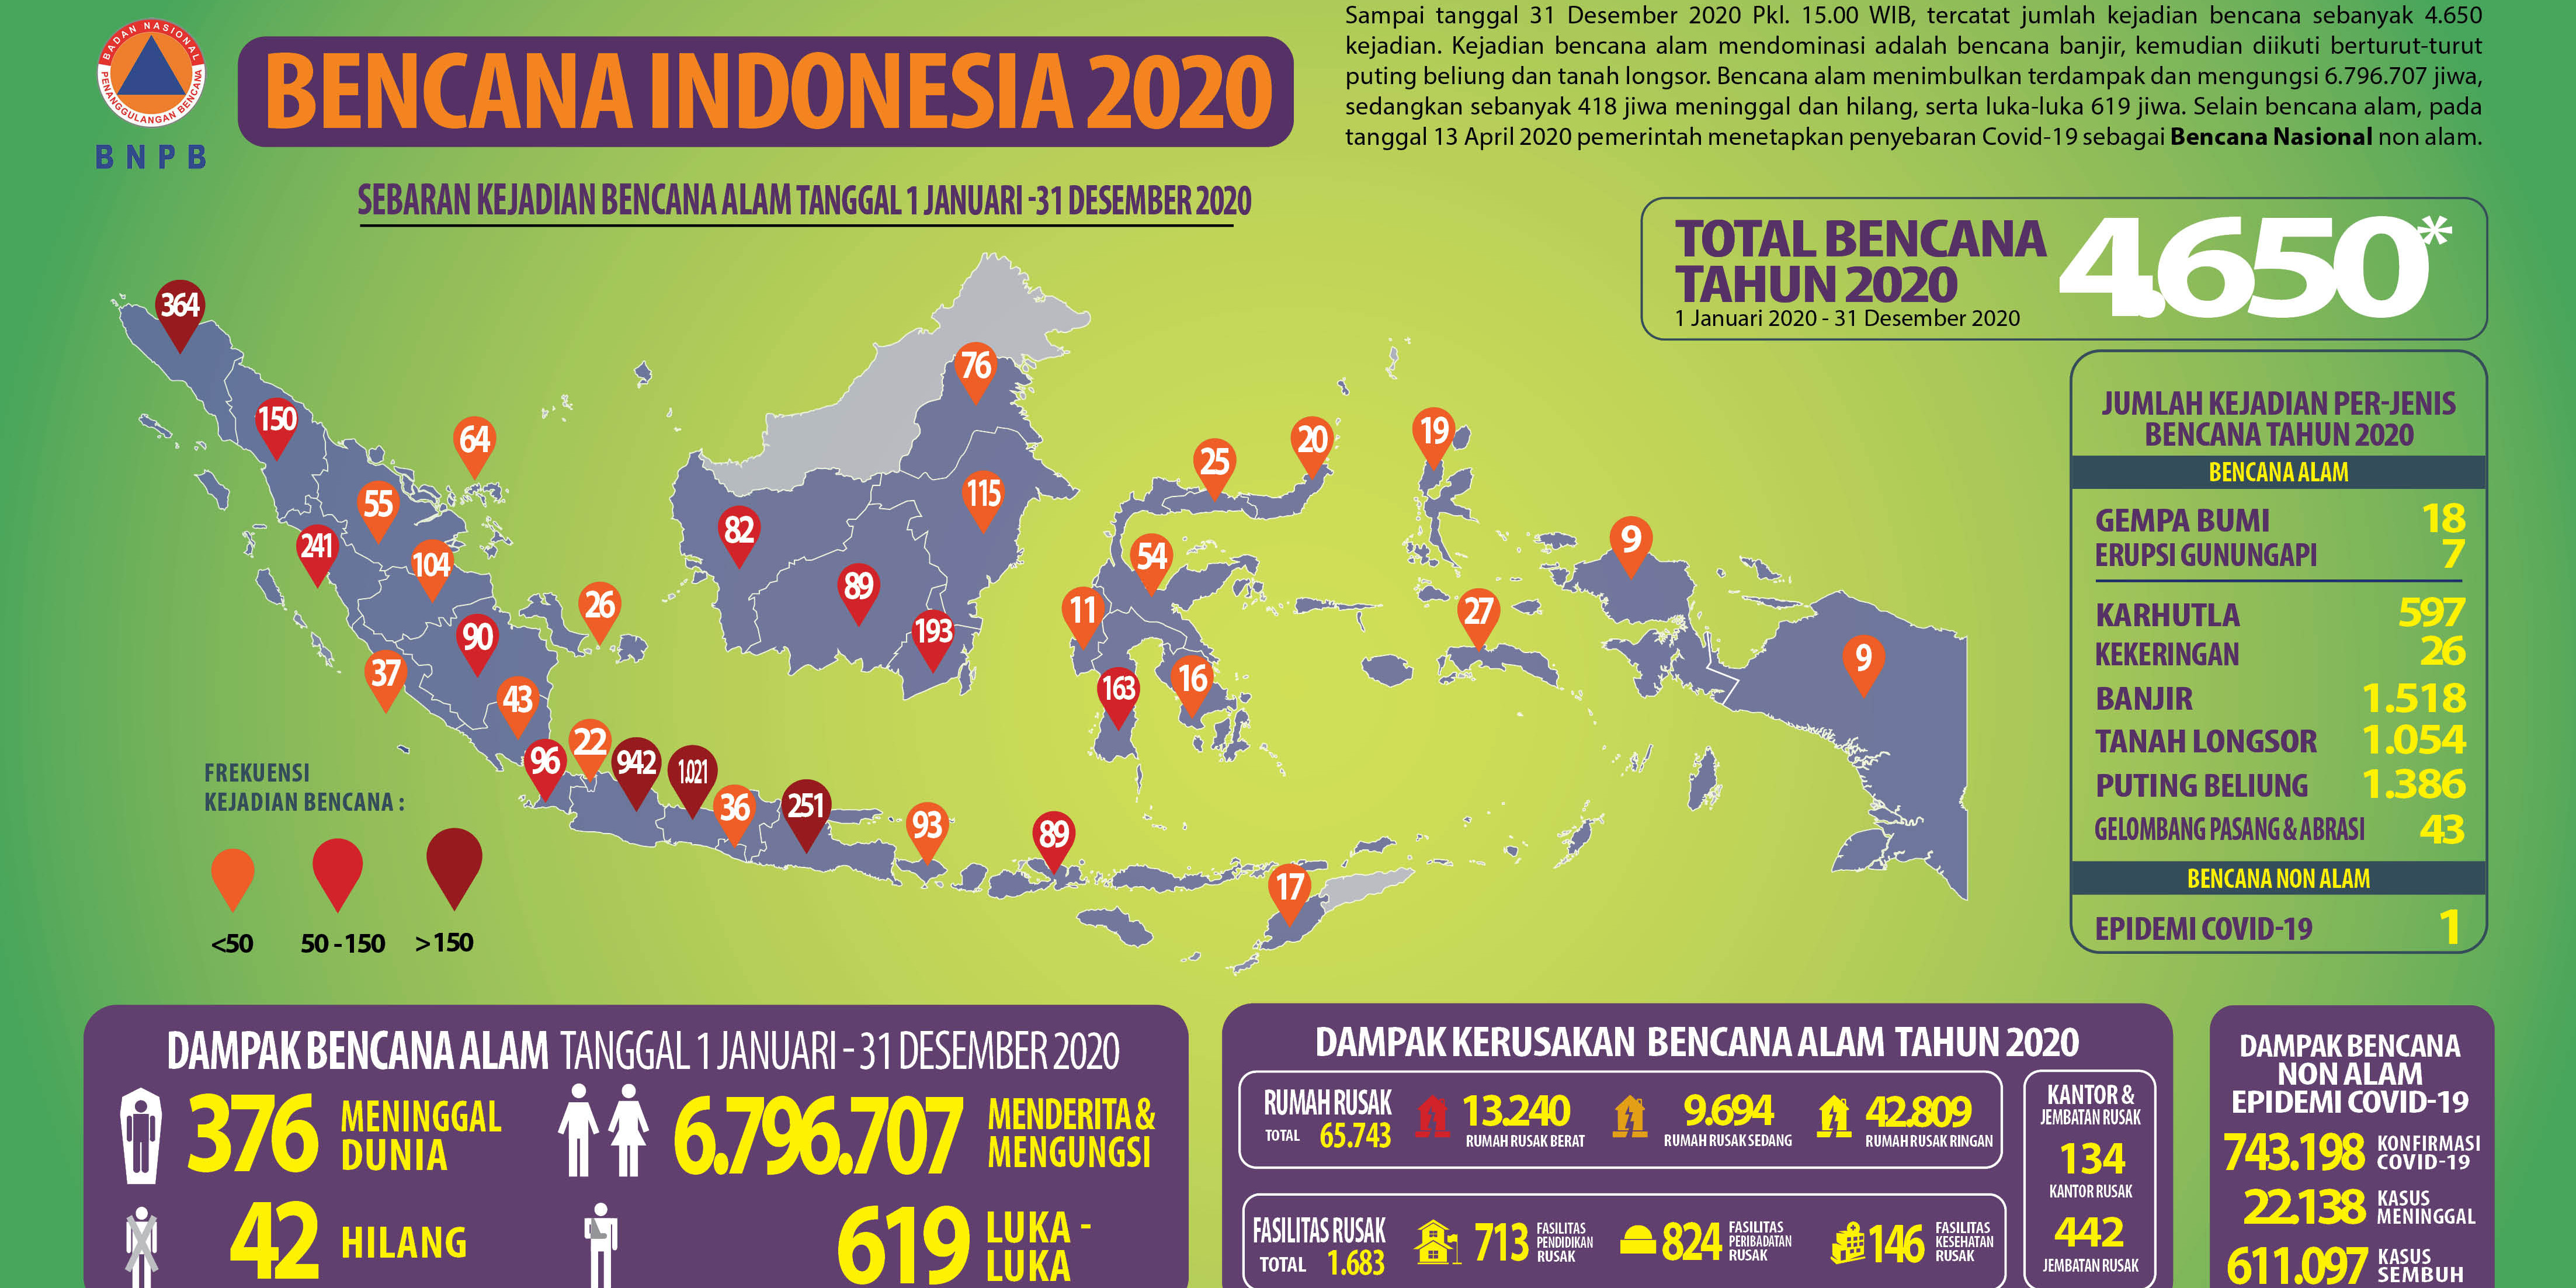 BNPB Telah Selesaikan Verifikasi Data Bencana Indonesia 2020